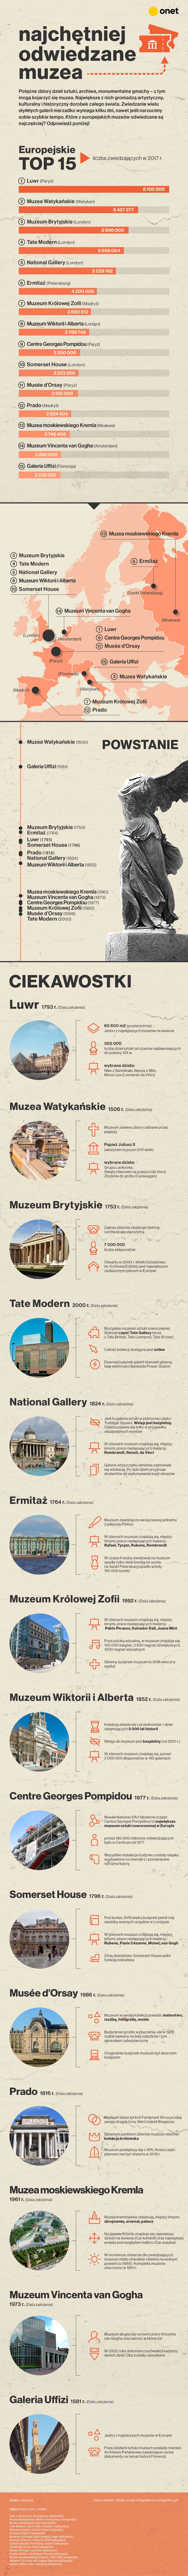 Najchętniej odwiedzane muzea w Europie